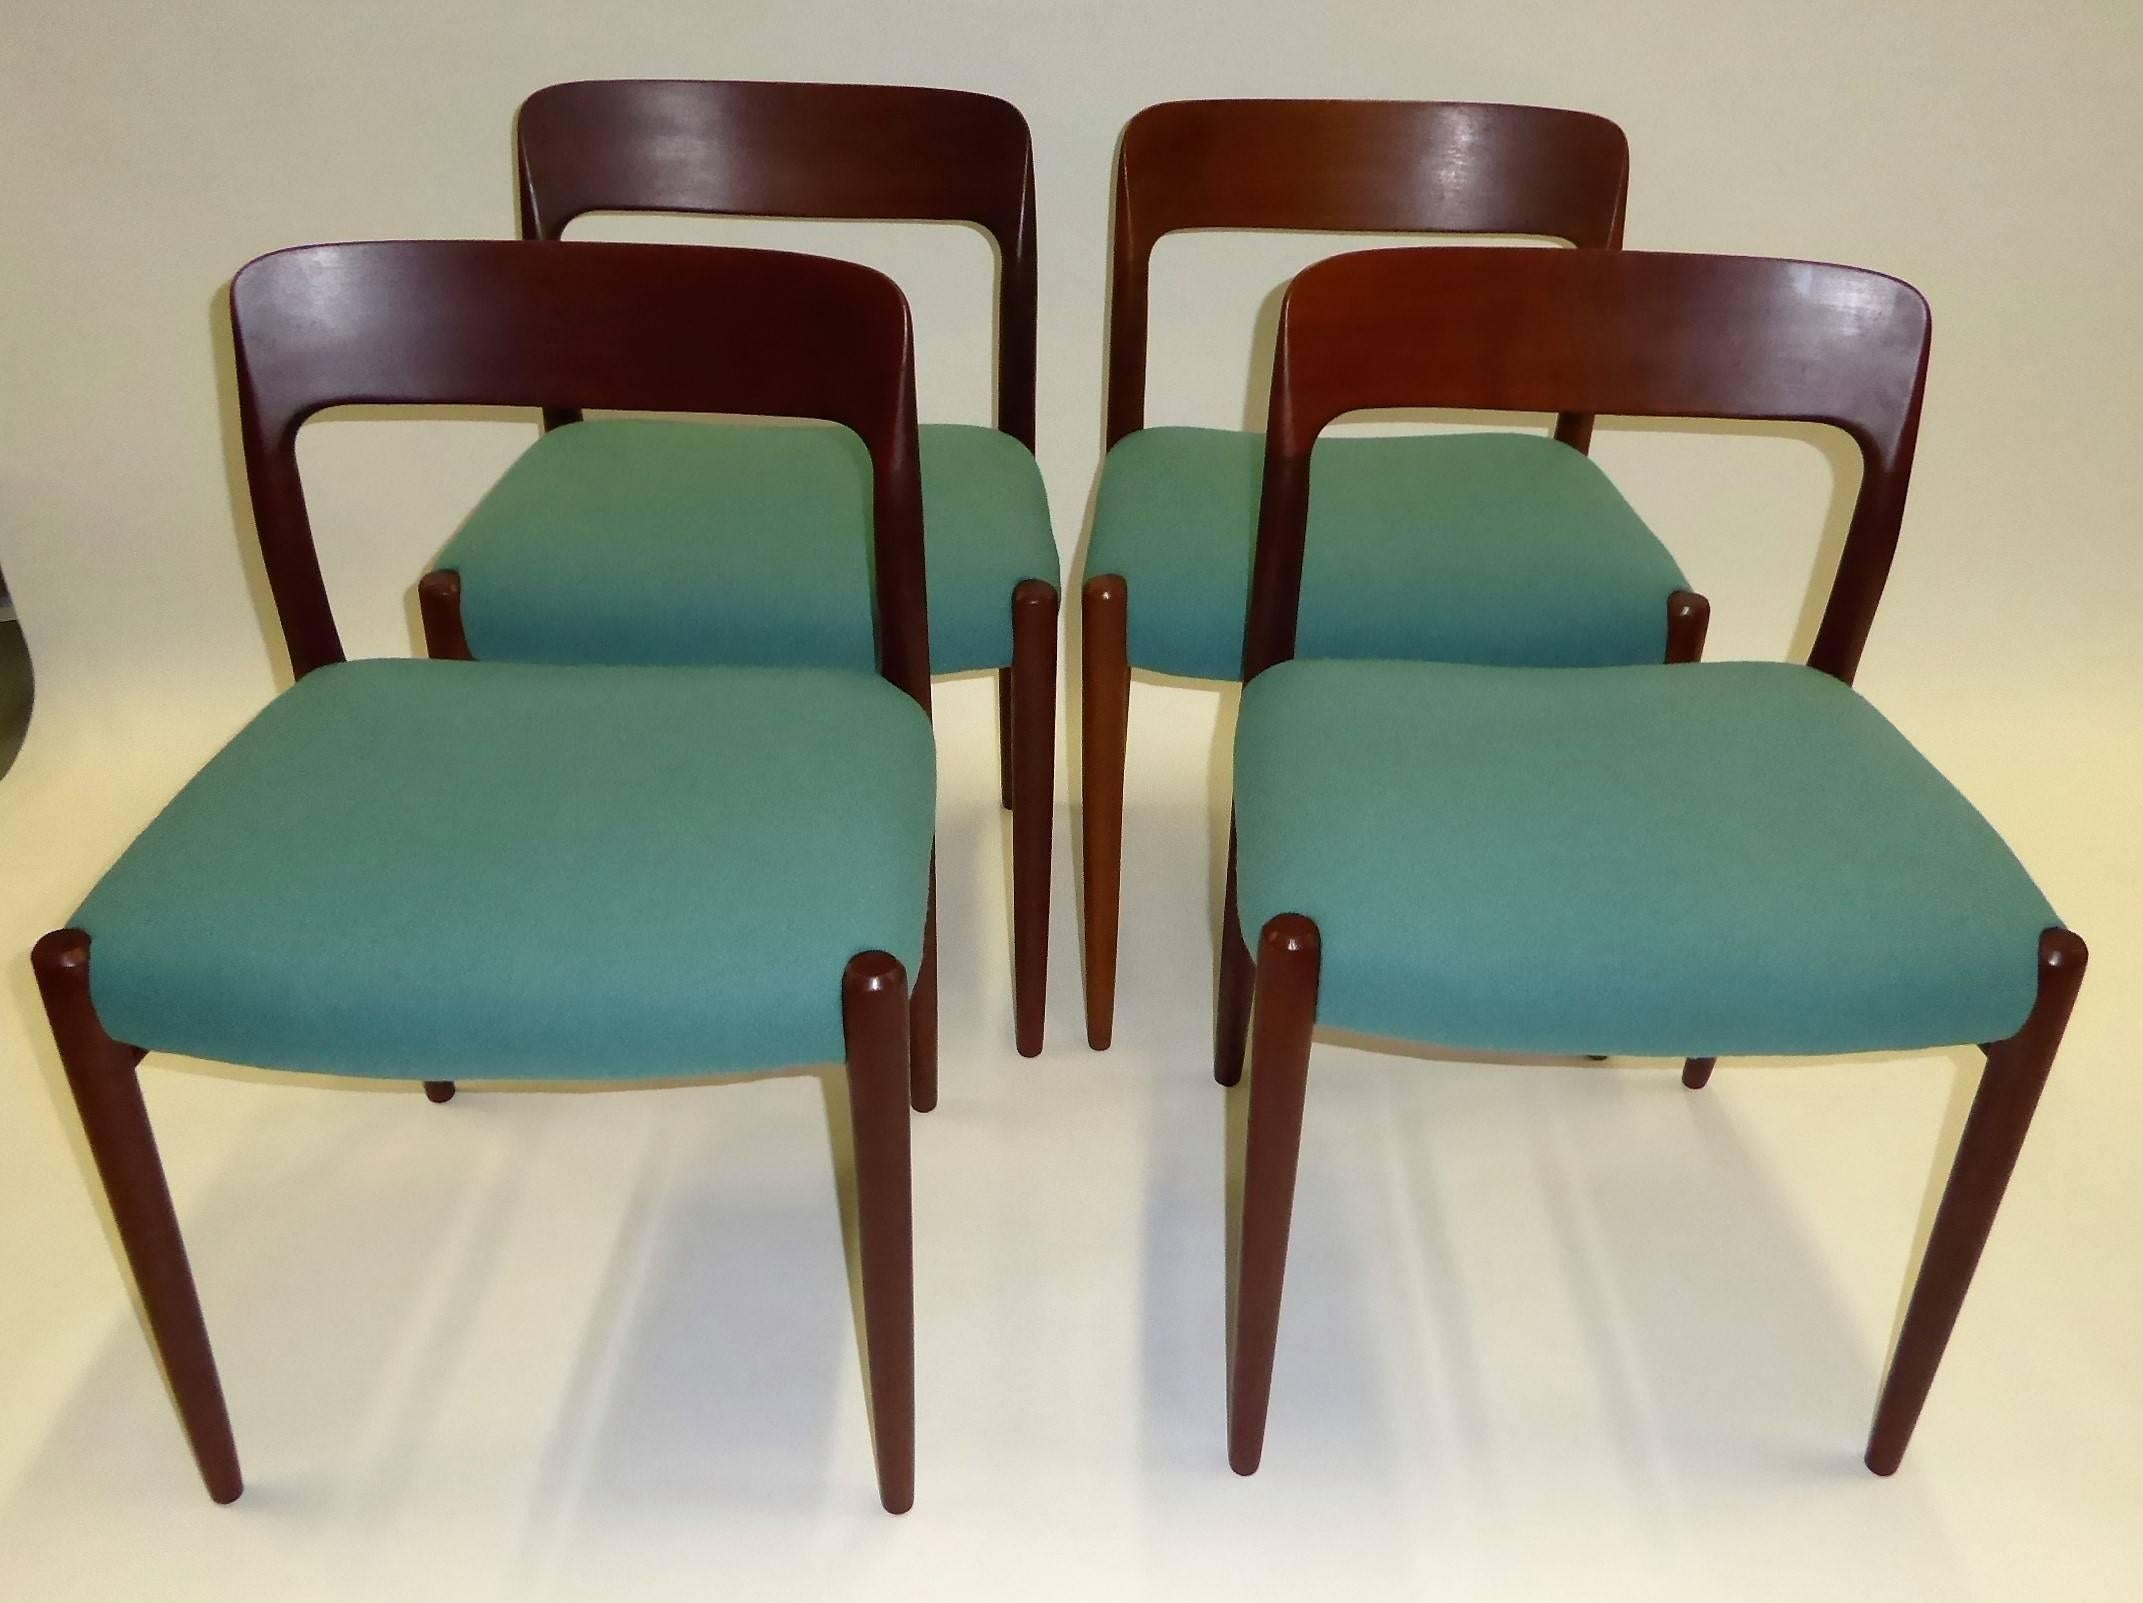 Scandinavian Modern Four Niels Otto Møller Teak Dining Chairs for Jl Møller, 1954